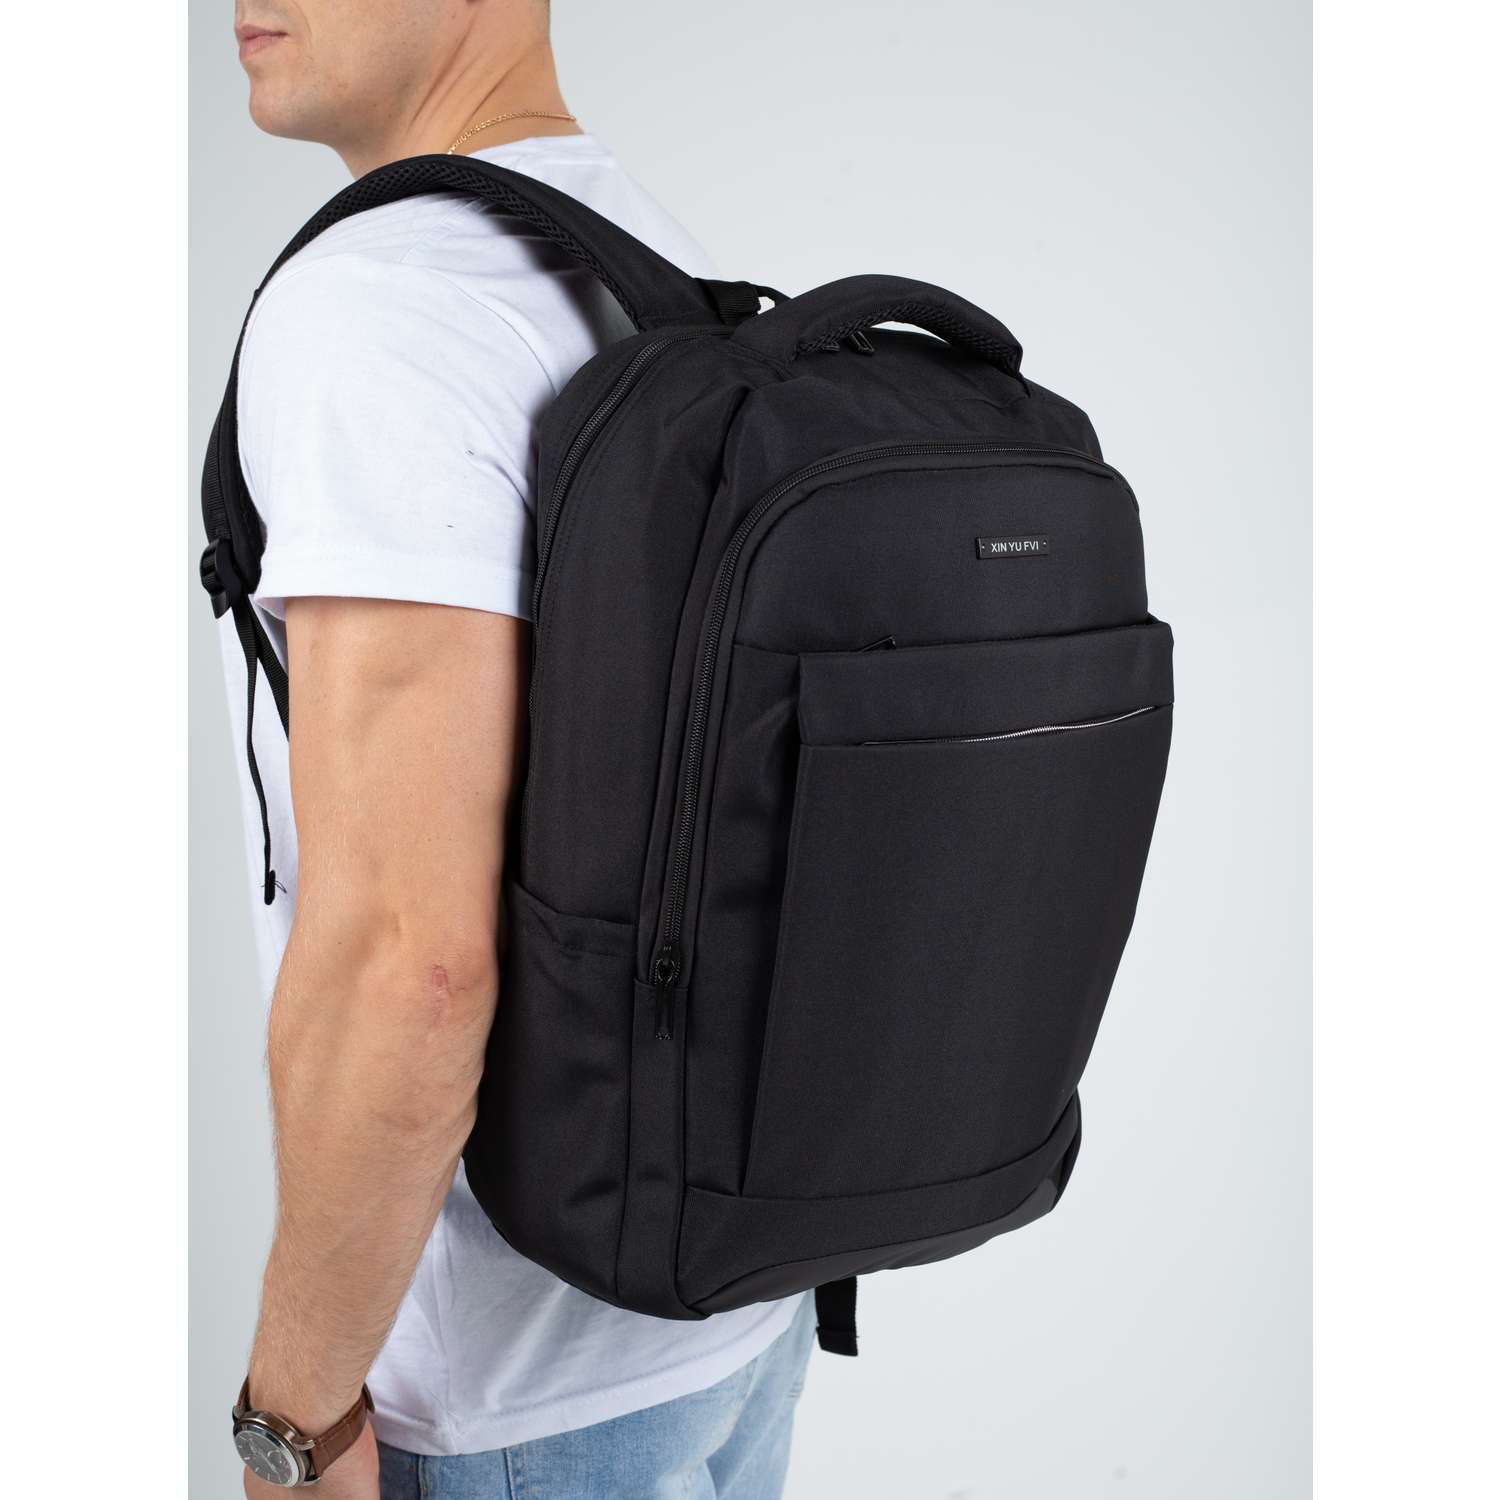 Рюкзак черный DUOYANG школьный подростковый для учебы и спорта - фото 5